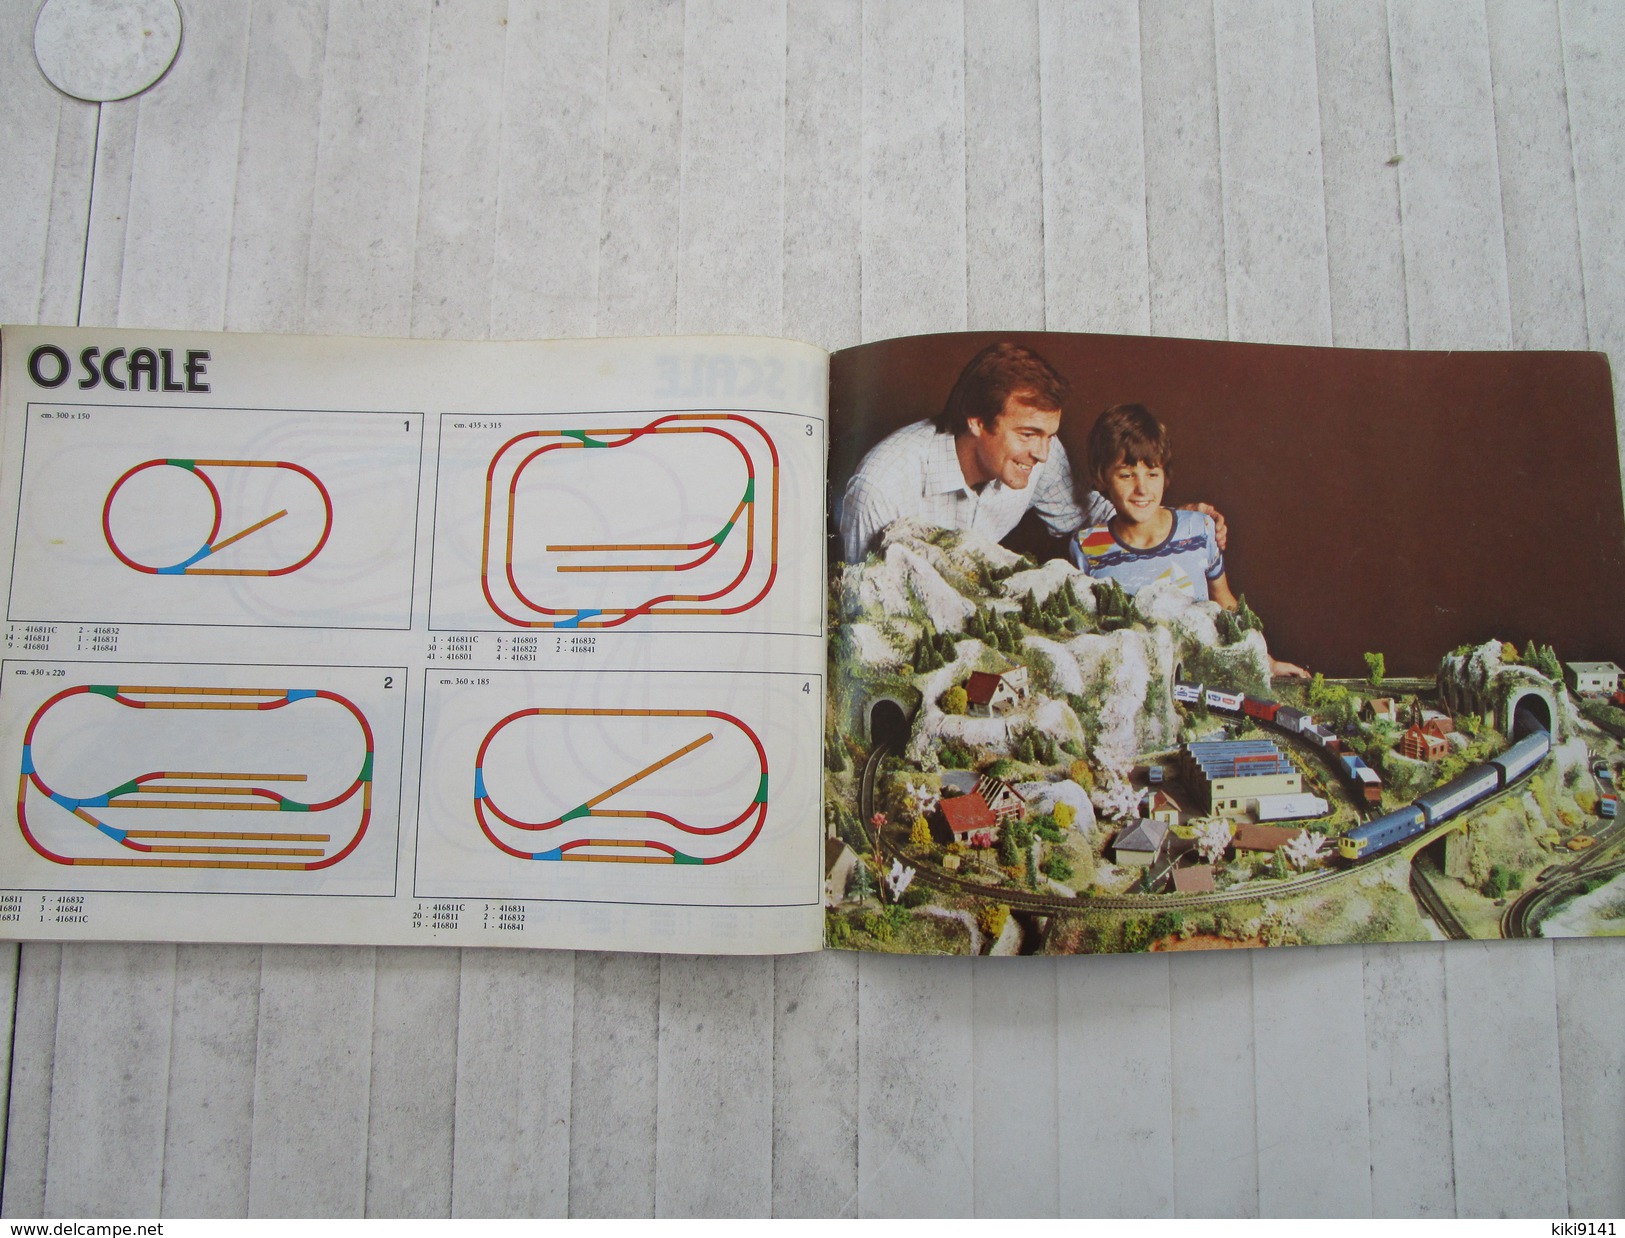 Guide complet des Chemins de Fer Miniatures LIMA 1978/1979 (84 pages)